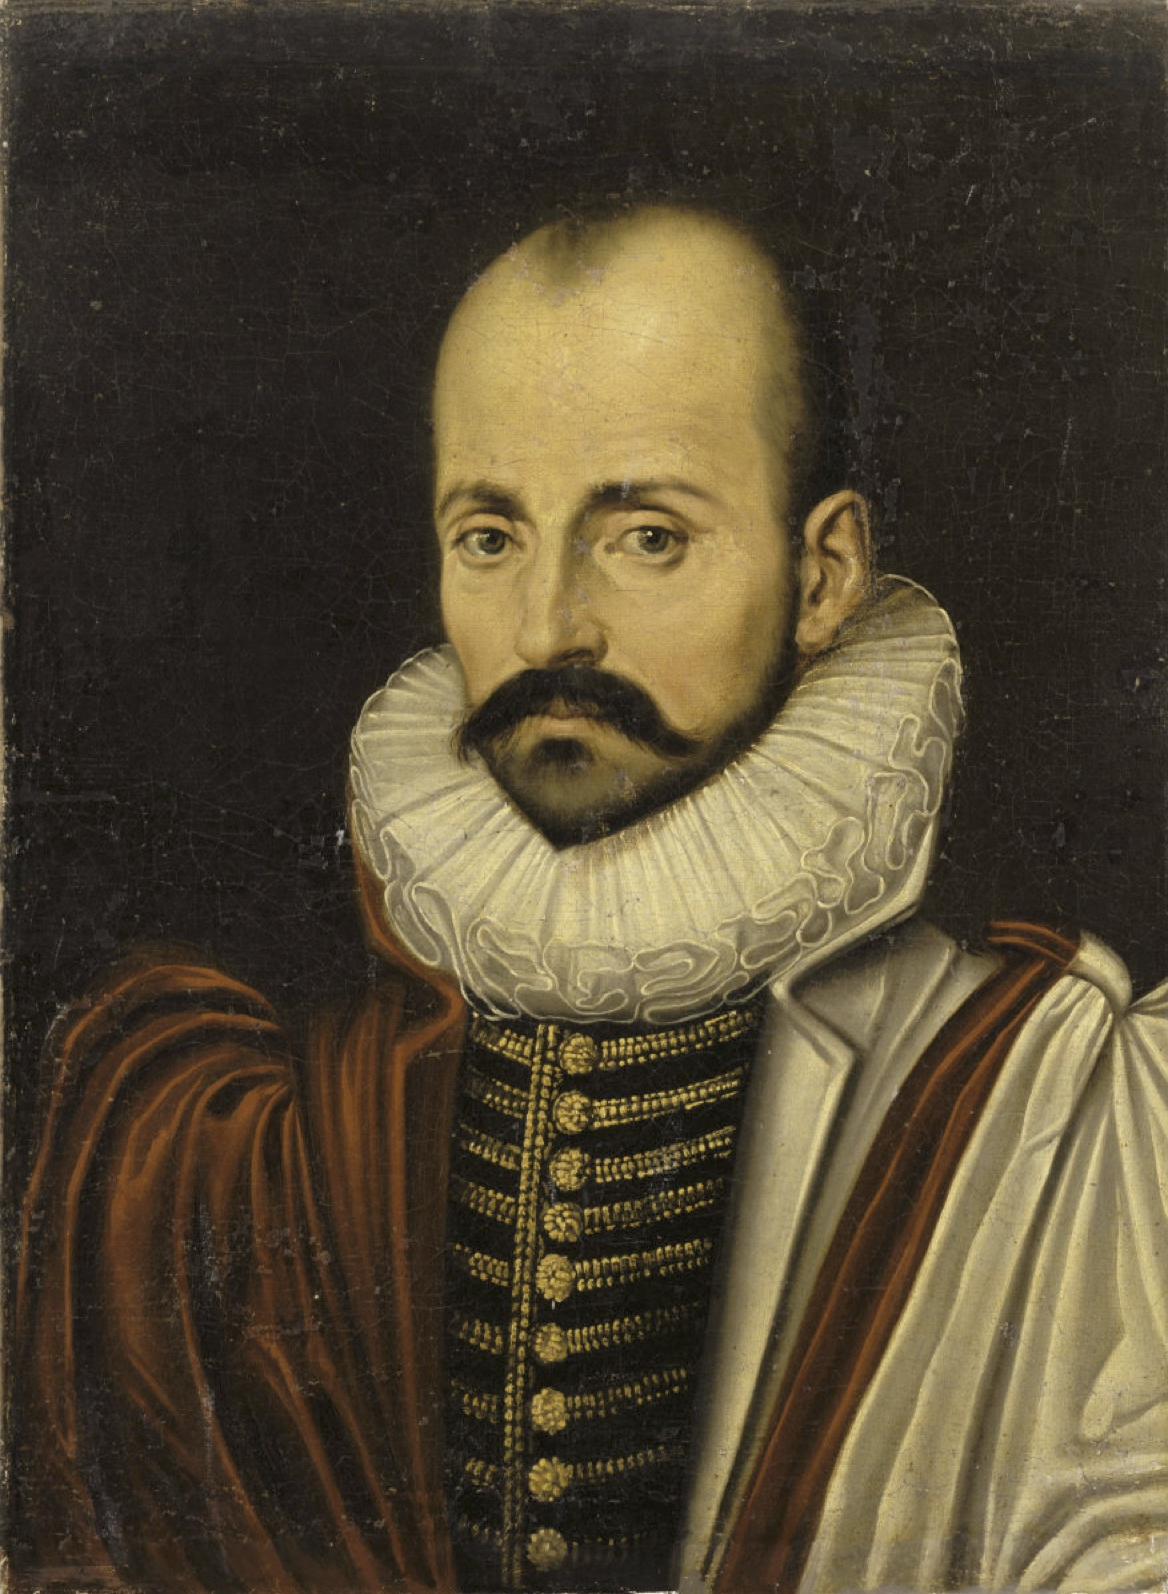 Michel de Montaigne retratado hacia 1570.